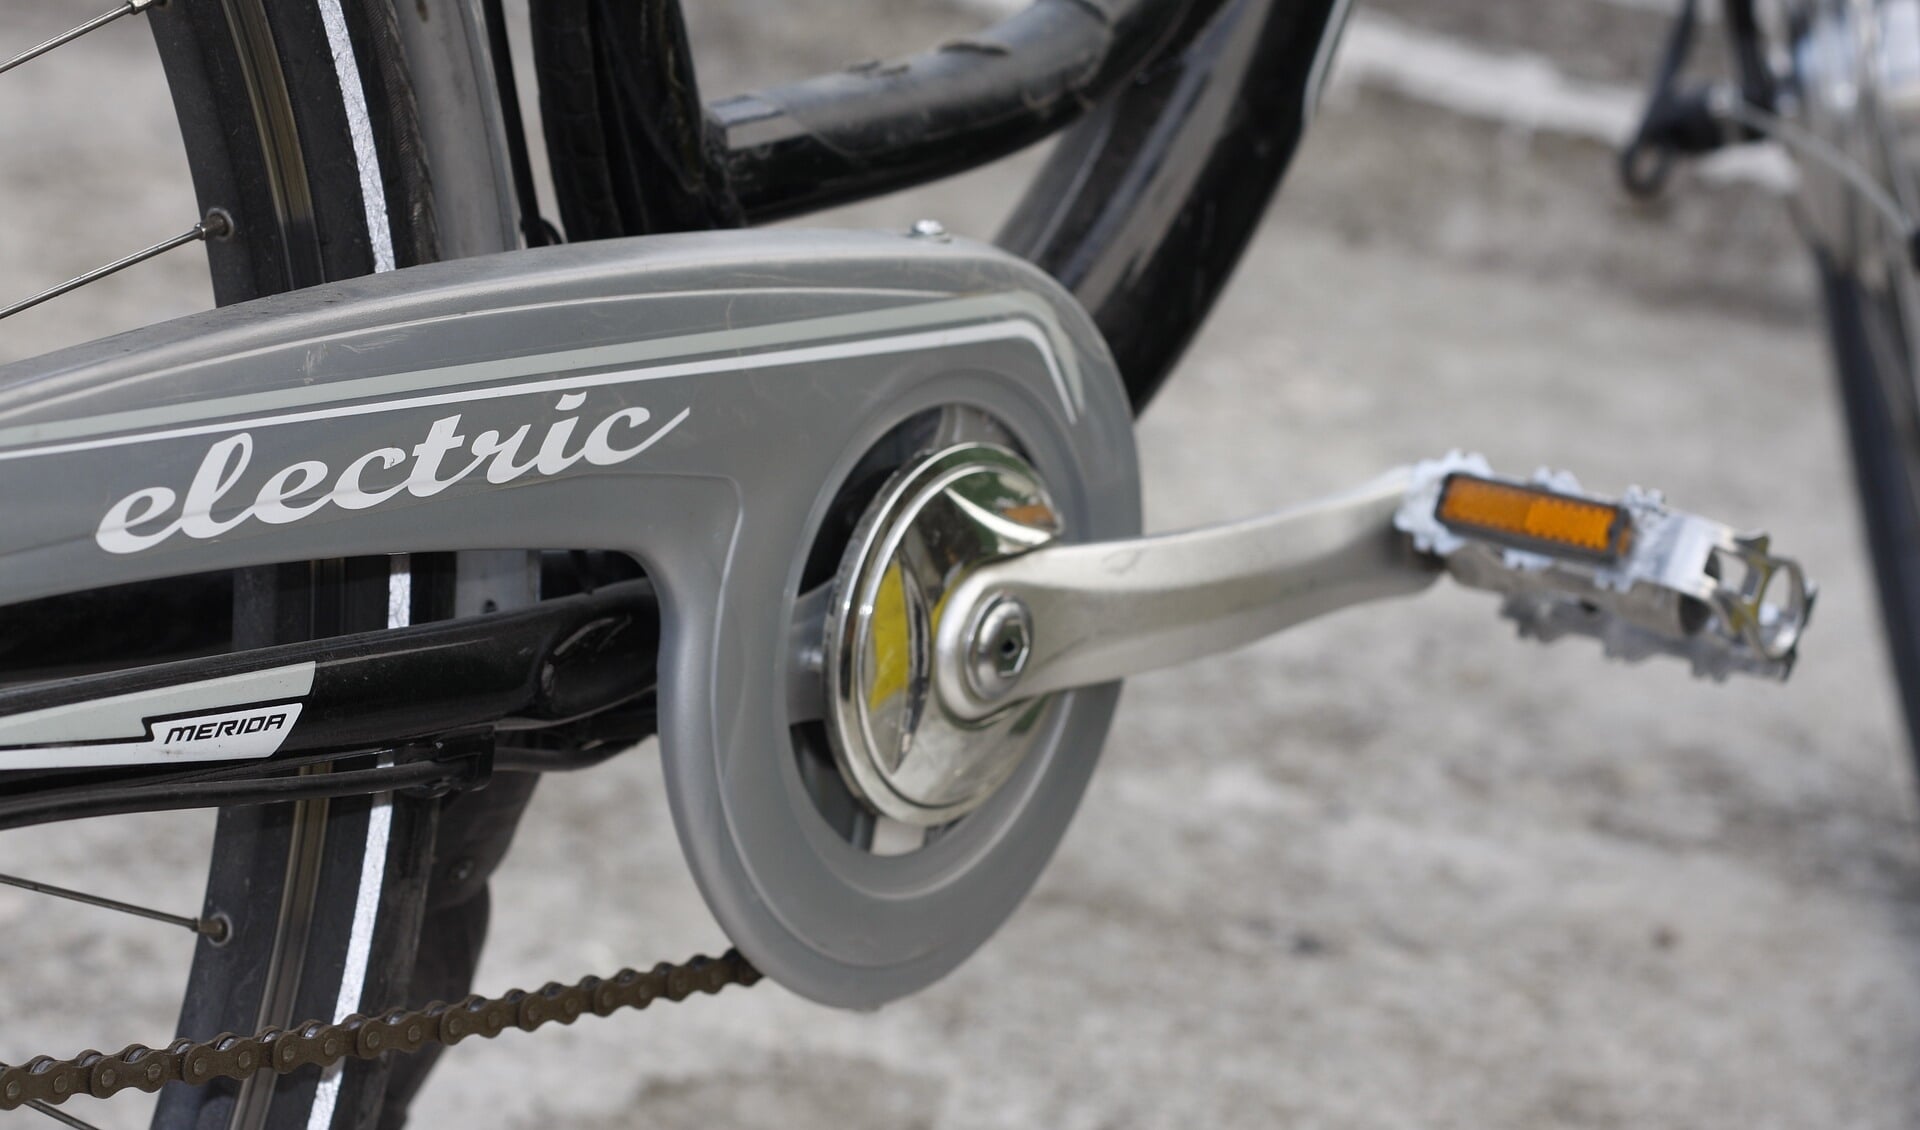 Veel ongelukken gebeuren er met opgevoerde elektrische fietsen, die in vergelijking met een normale fiets veel sneller gaan.